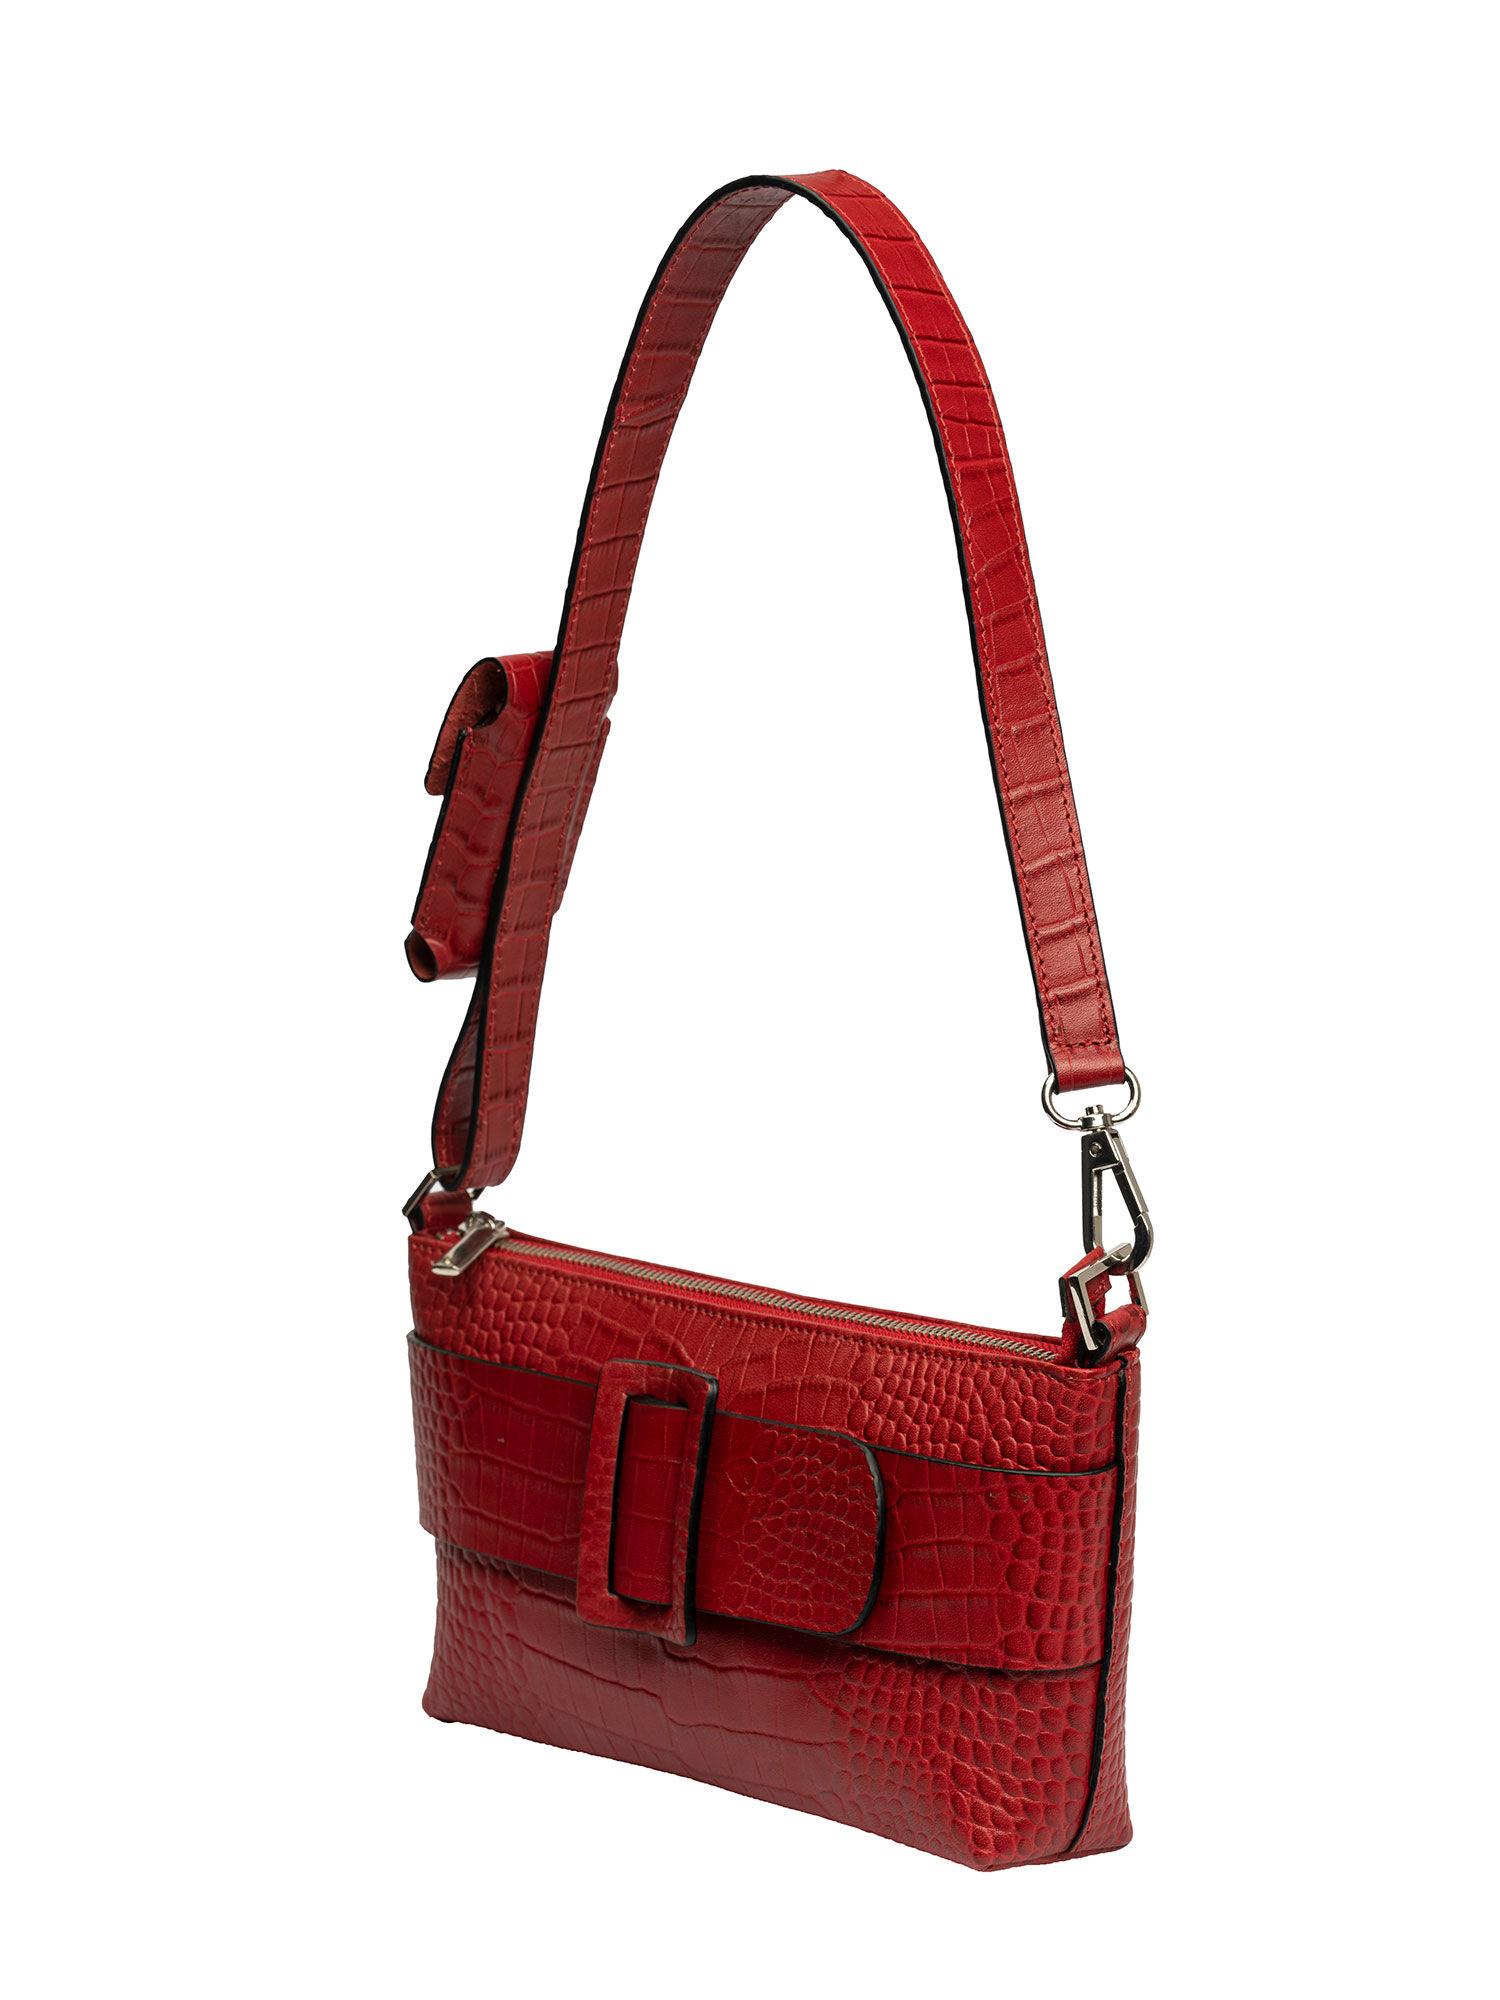 alexandra red handbag